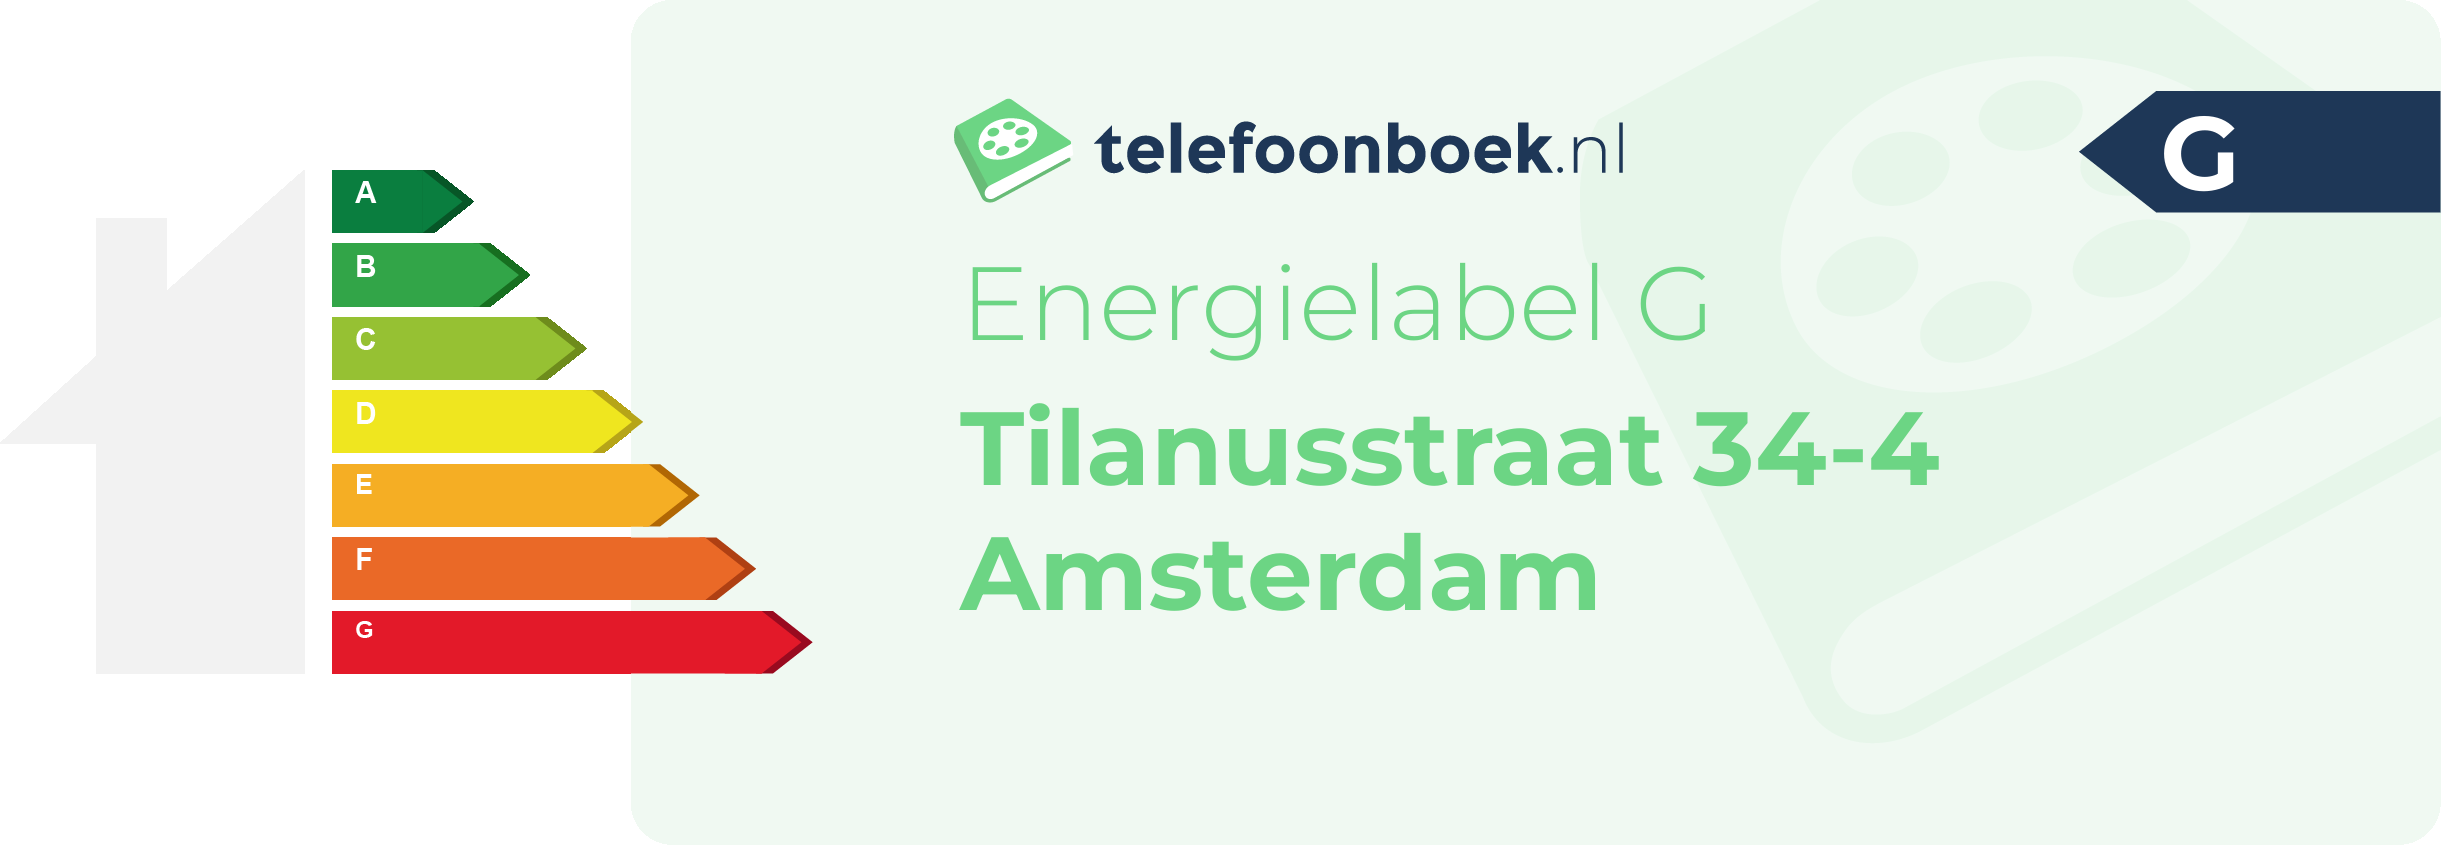 Energielabel Tilanusstraat 34-4 Amsterdam